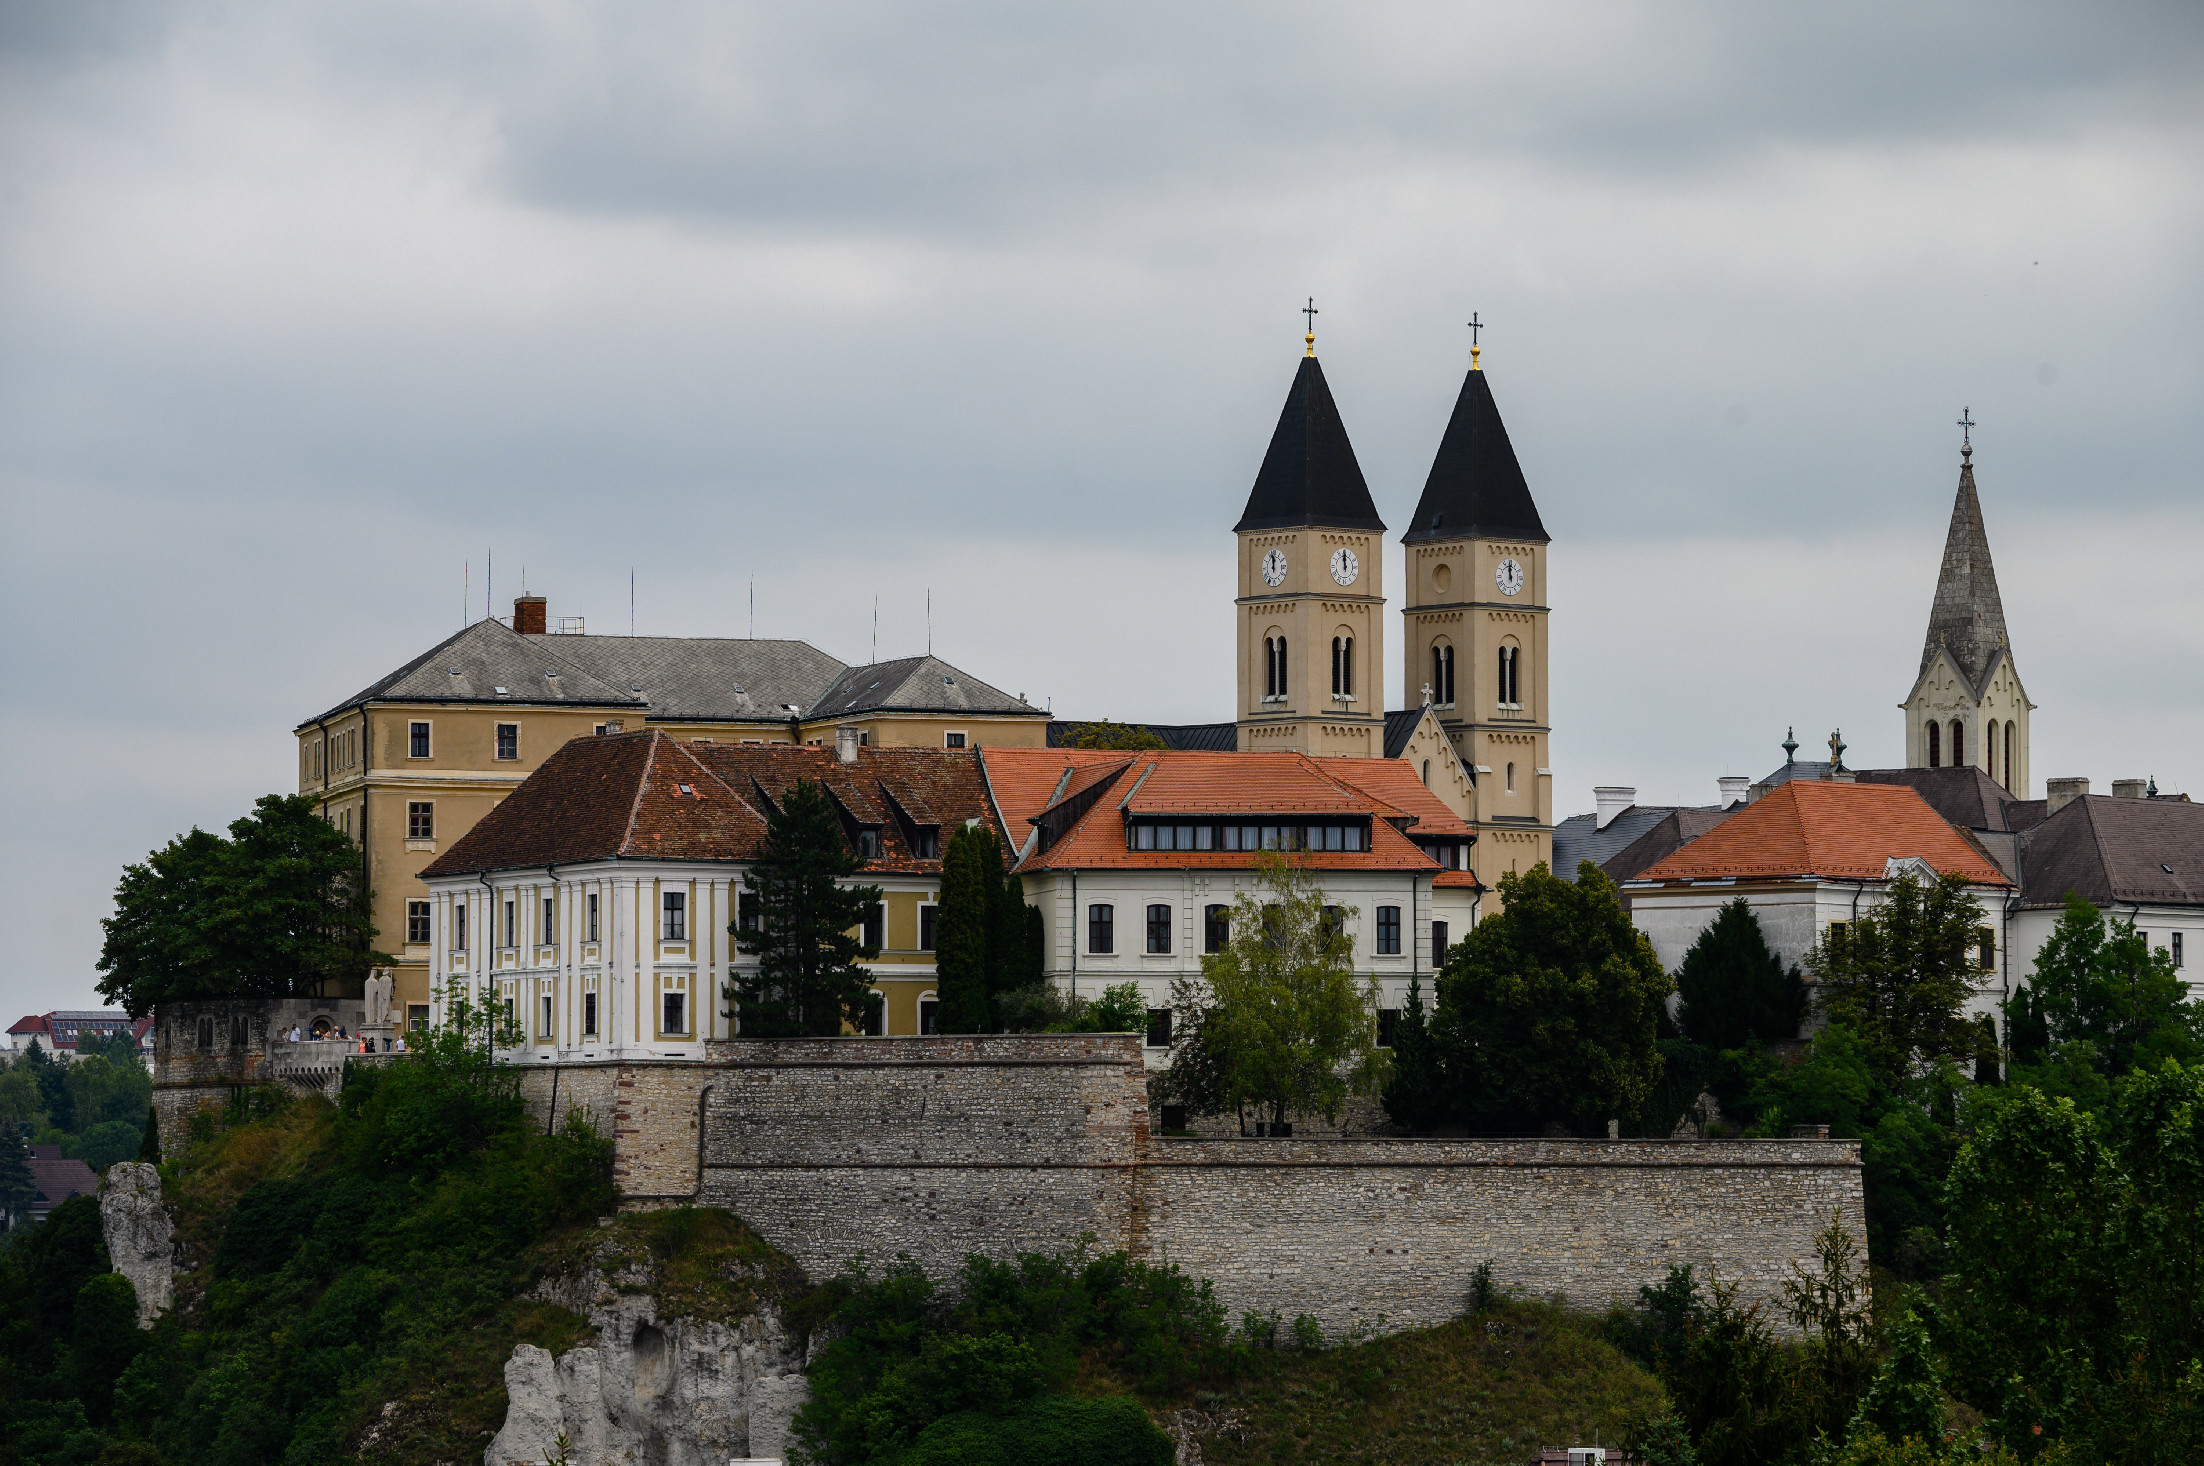 Veszprém, Elefszína és Temesvár lesznek Európa Kulturális Fővárosai 2023-ban